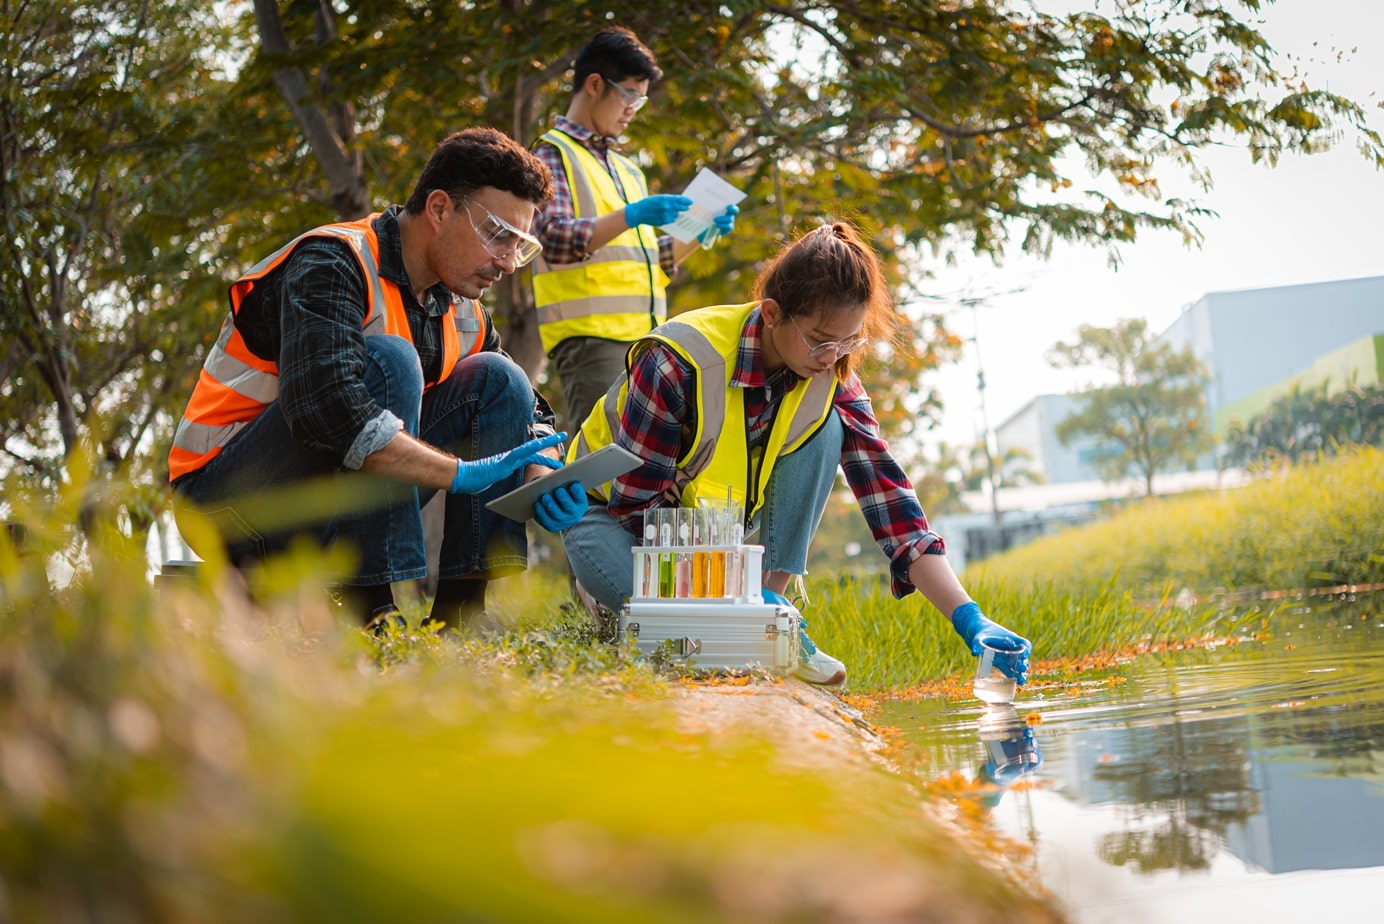 Wissenschaftlerteam entnimmt Wasserproben für Analysen und Forschungen zu Wasserqualität, Umwelt und Rettung der Erde.